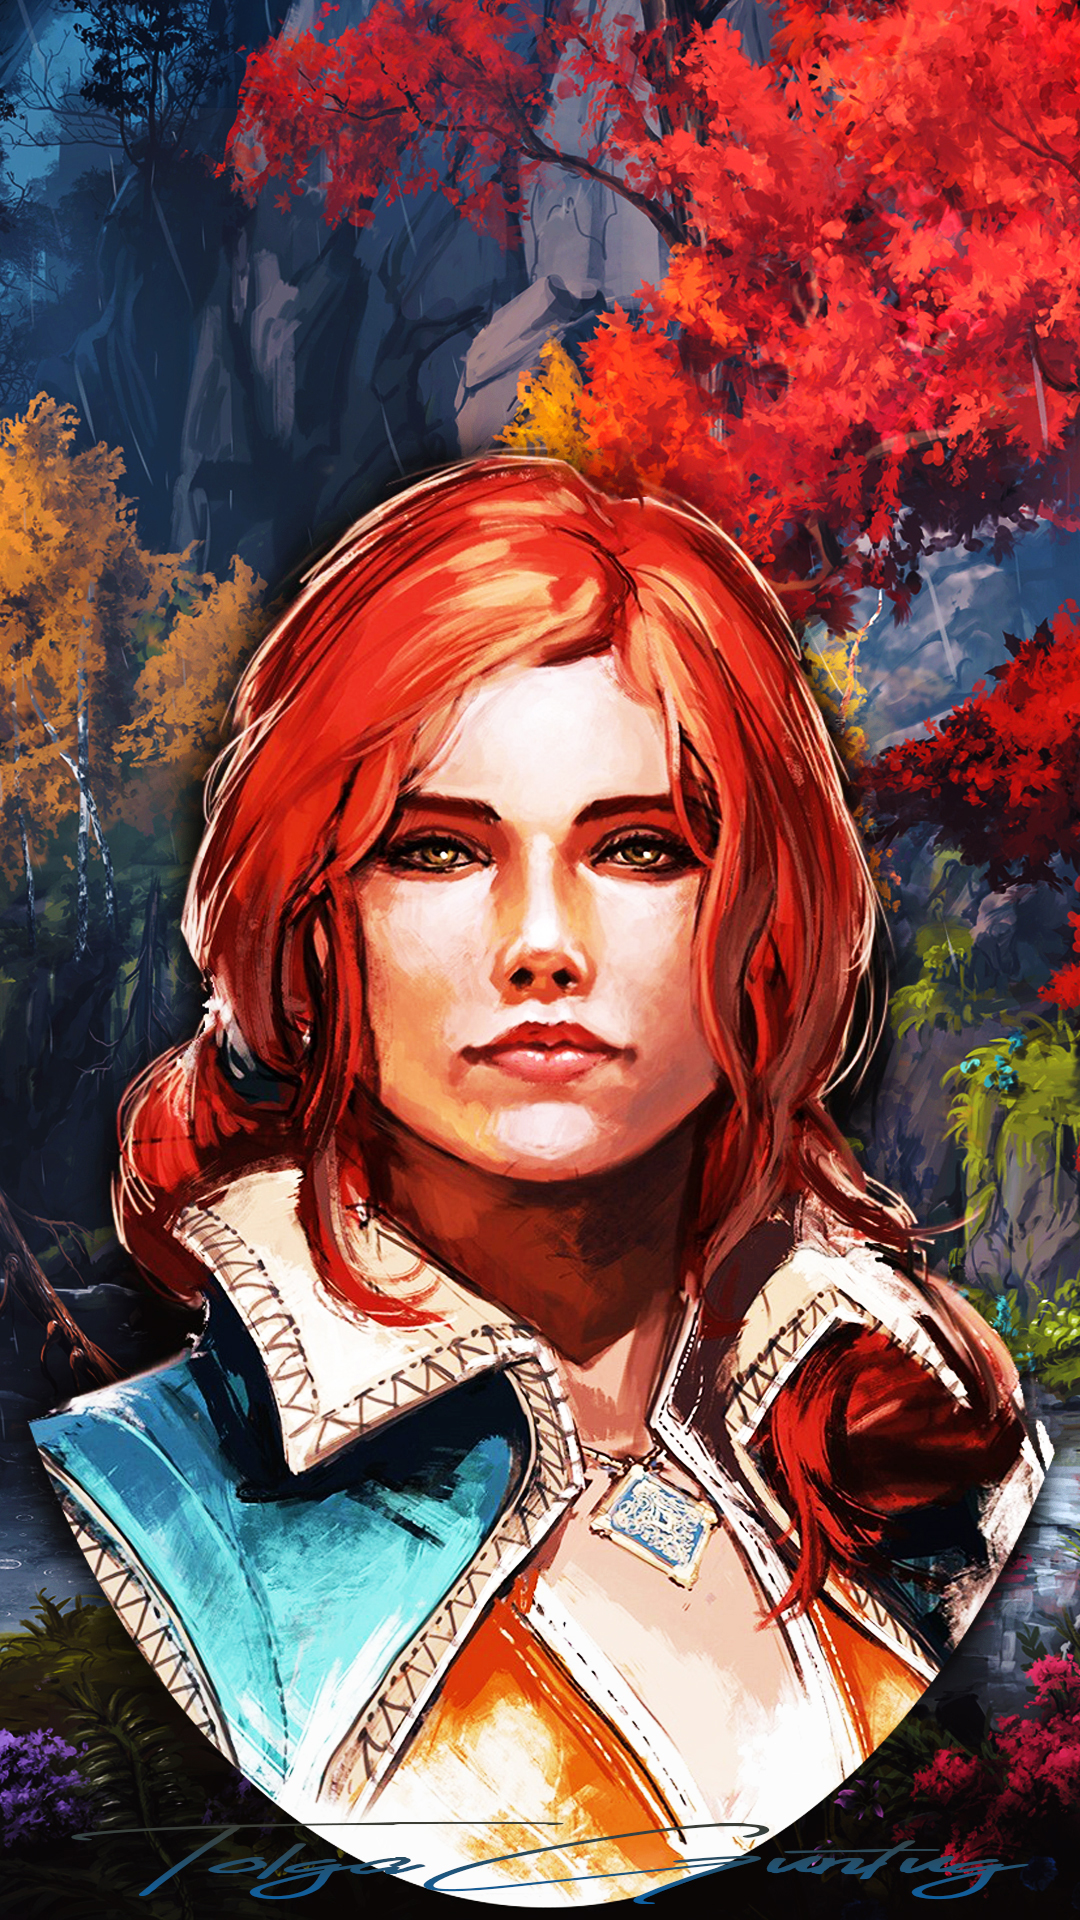 General 1080x1920 digital art artwork Triss Merigold video game art video games The Witcher The Witcher 3: Wild Hunt forest trees women redhead